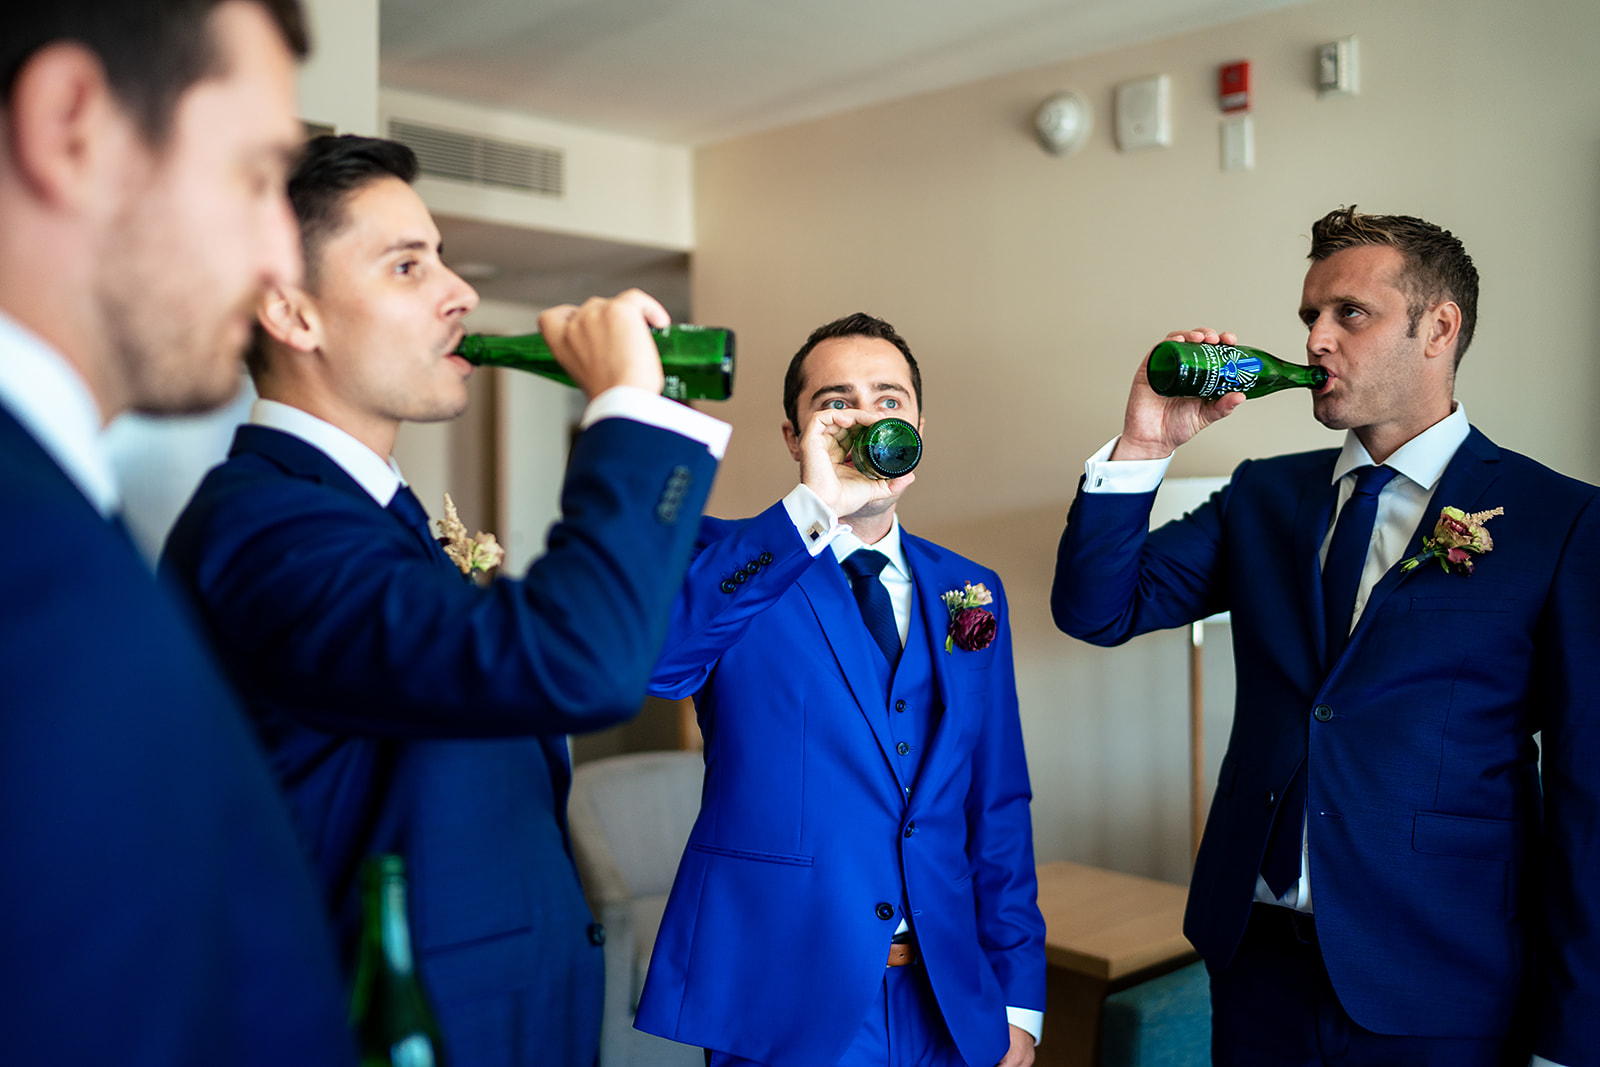 Groom and the groomsmen drinking beer 